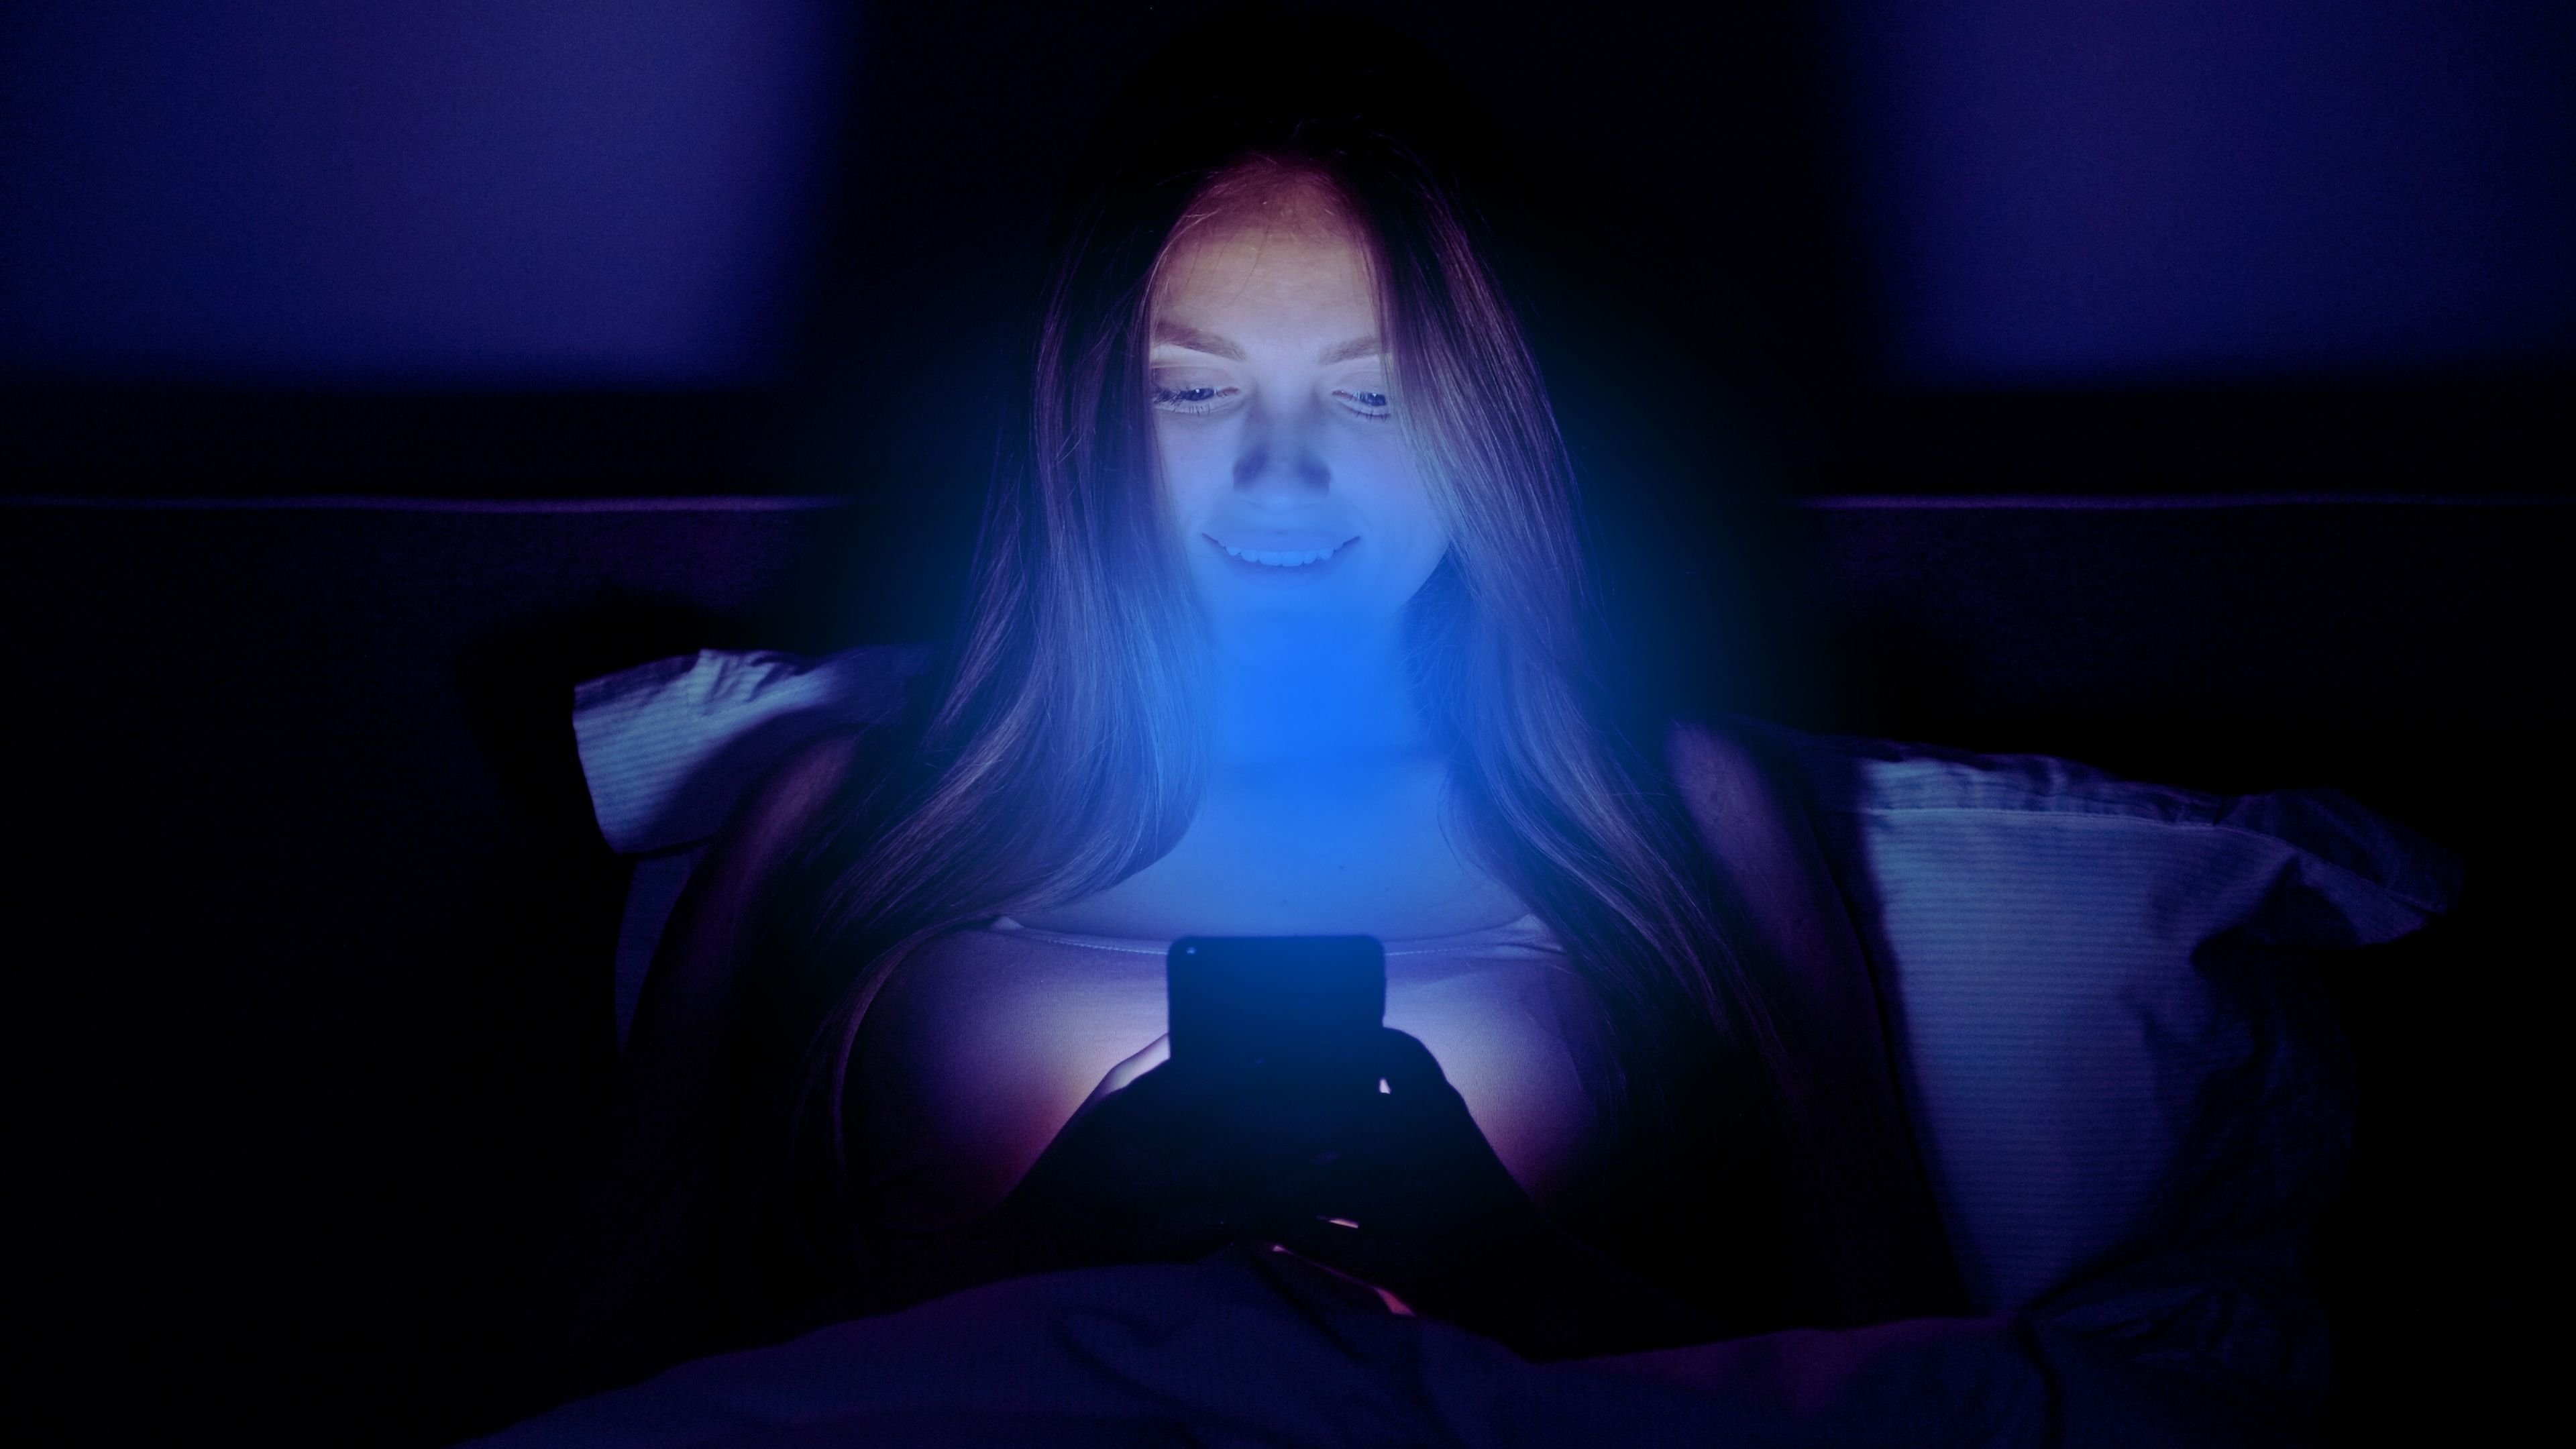 QuÃ© es el filtro de luz azul y cÃ³mo puedes activarlo en tu mÃ³vil Android o iPhone